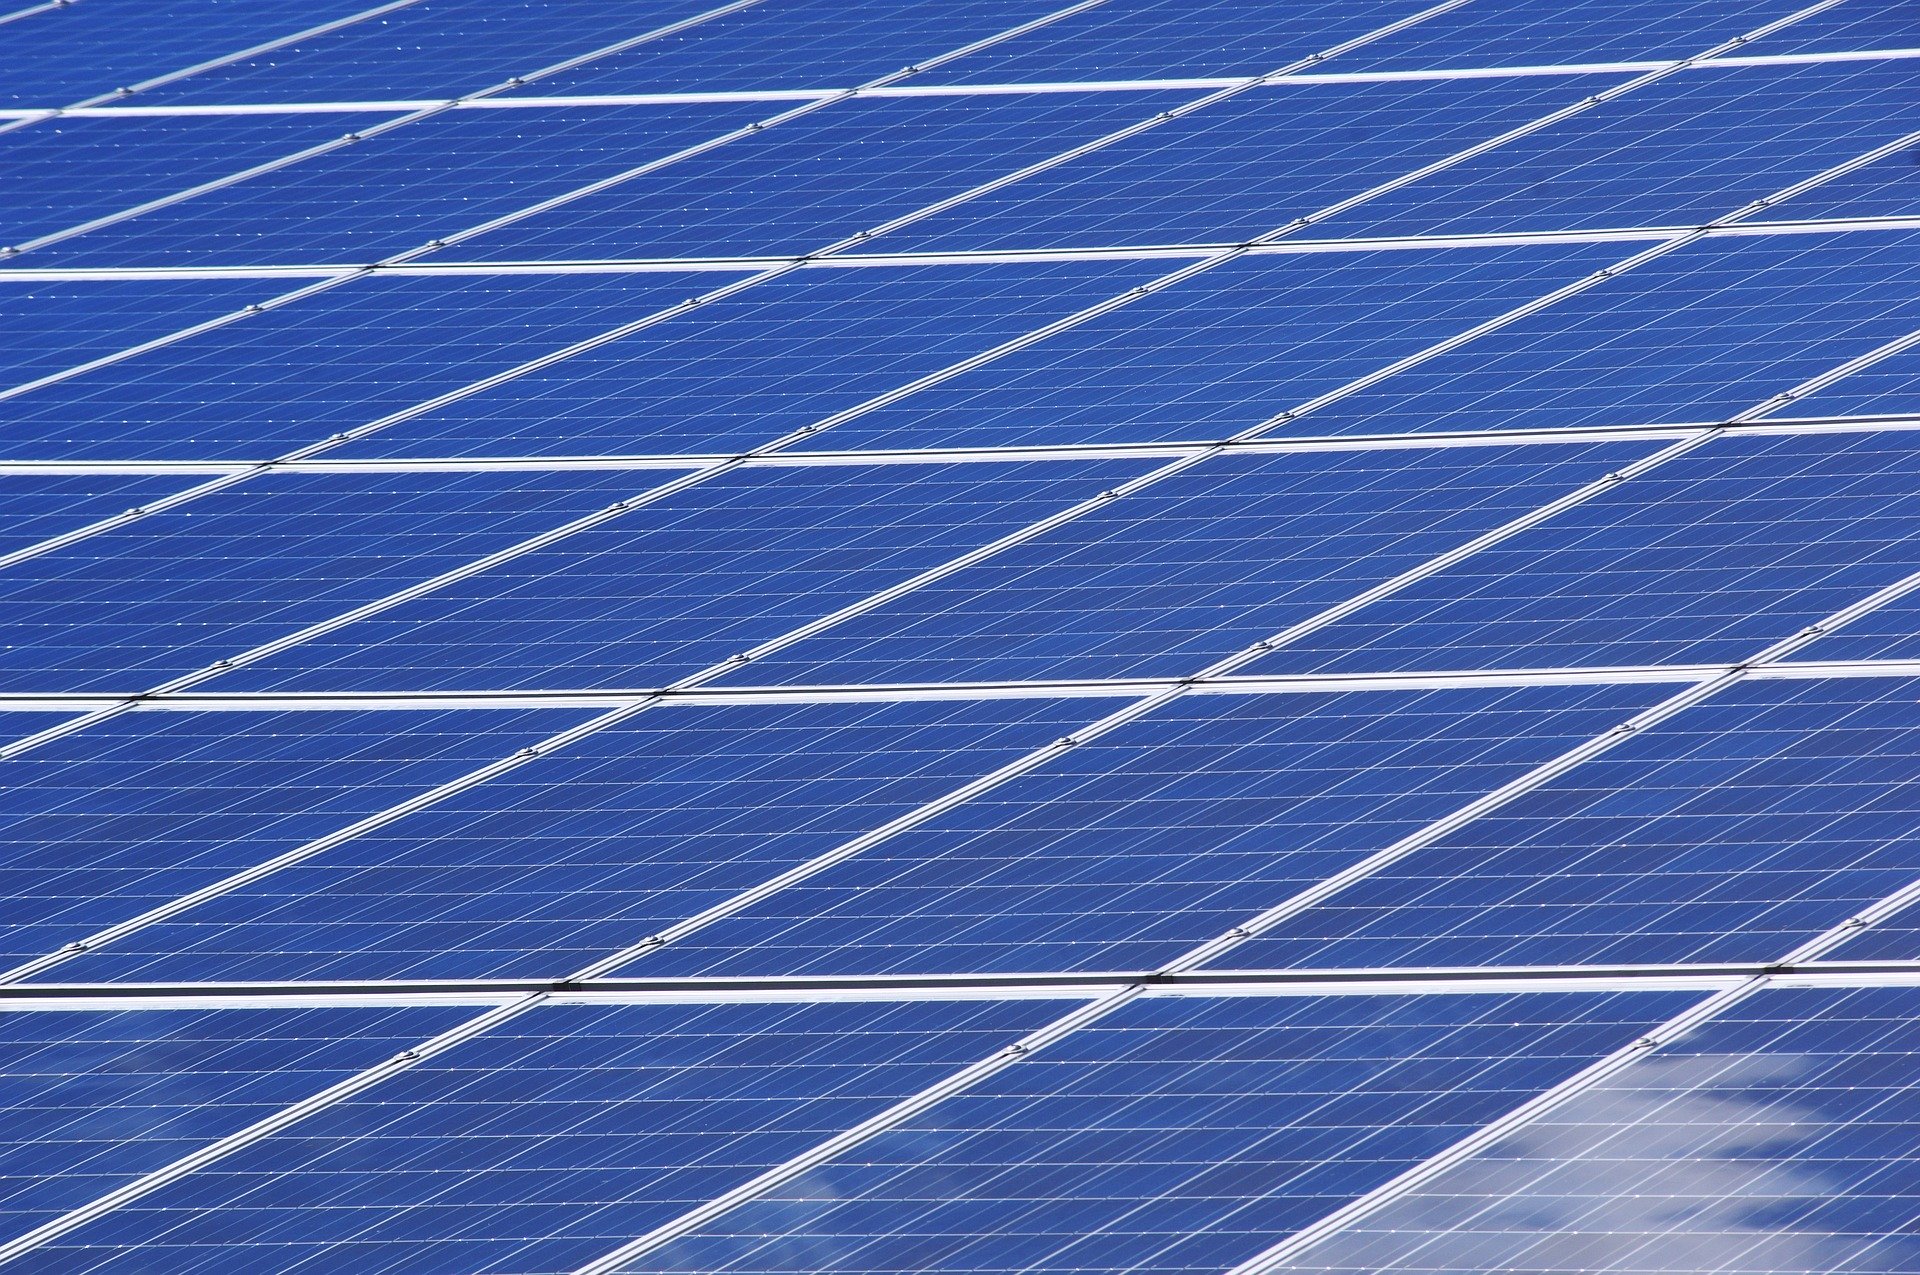 India tweaks 100 MW solar-plus-storage tender